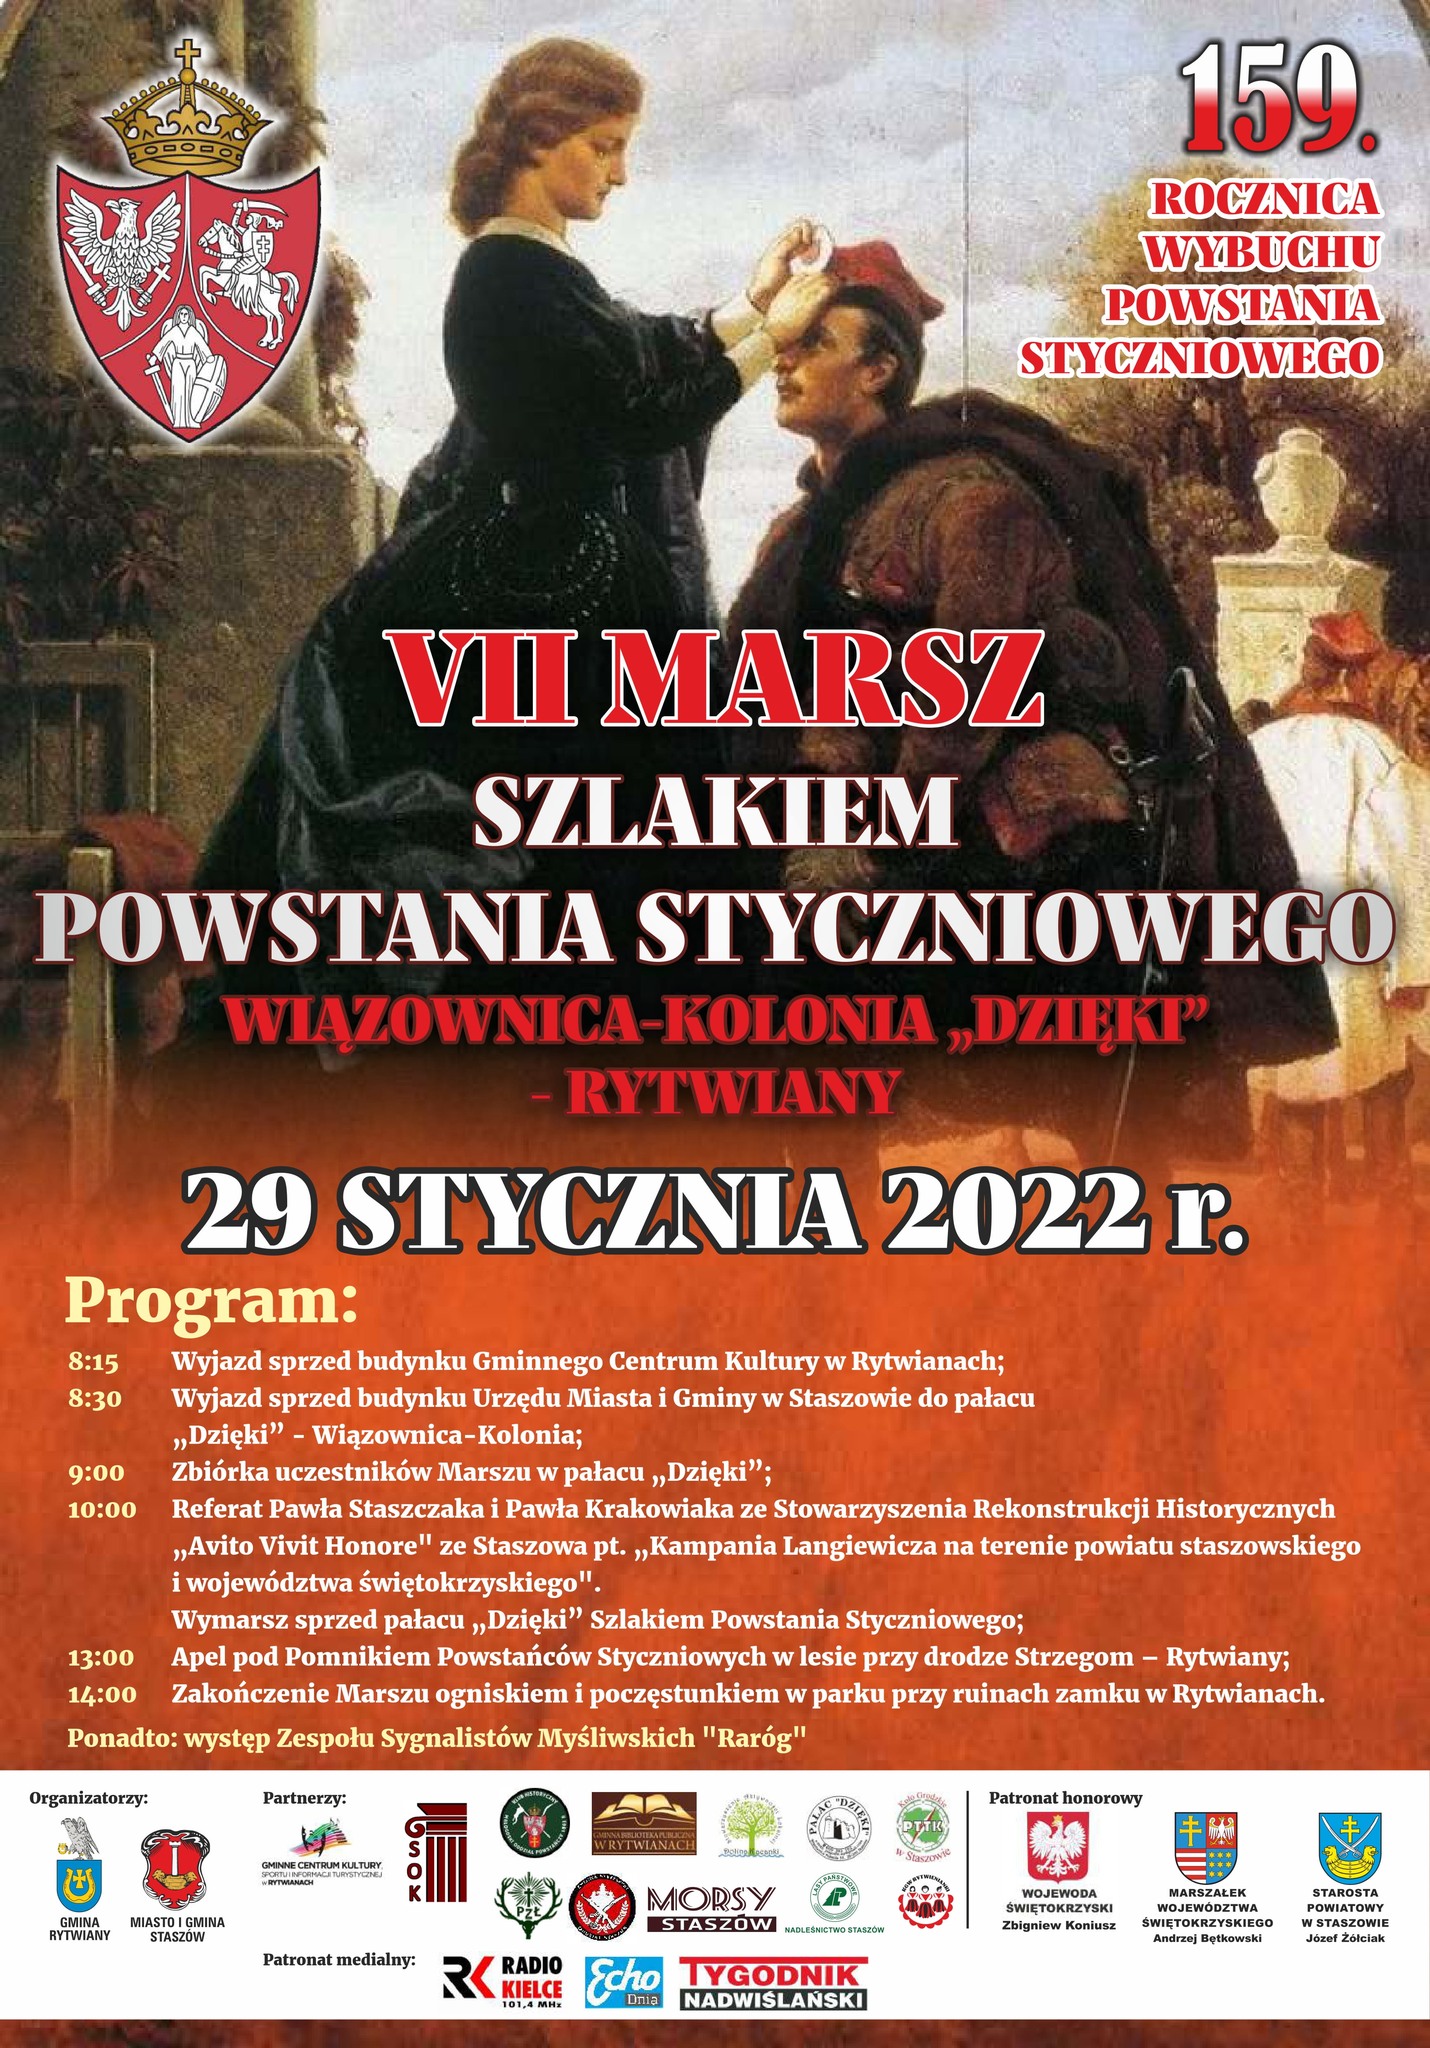 Plakat informacyjny: VII Marsz Szlakiem Powstania Styczniowego - 29 stycznia 2022 r., Wiązownica-Kolonia „Dzięki” - Rytwiany.